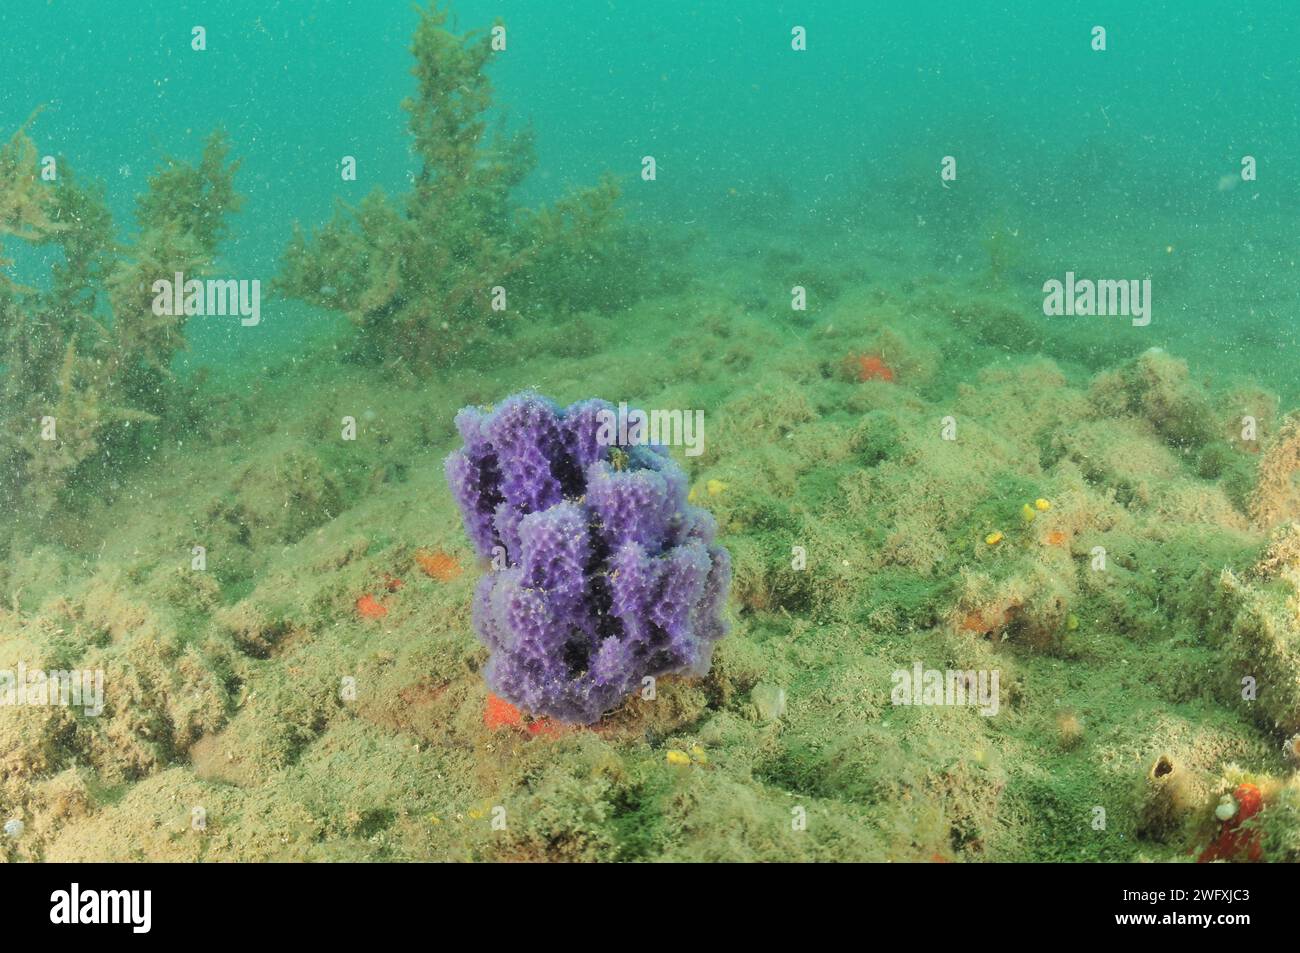 Éponge violette avec structure interne délicate se dressant du fond marin recouvert de sédiments fins. Lieu : Mahurangi Harbour Nouvelle-Zélande Banque D'Images